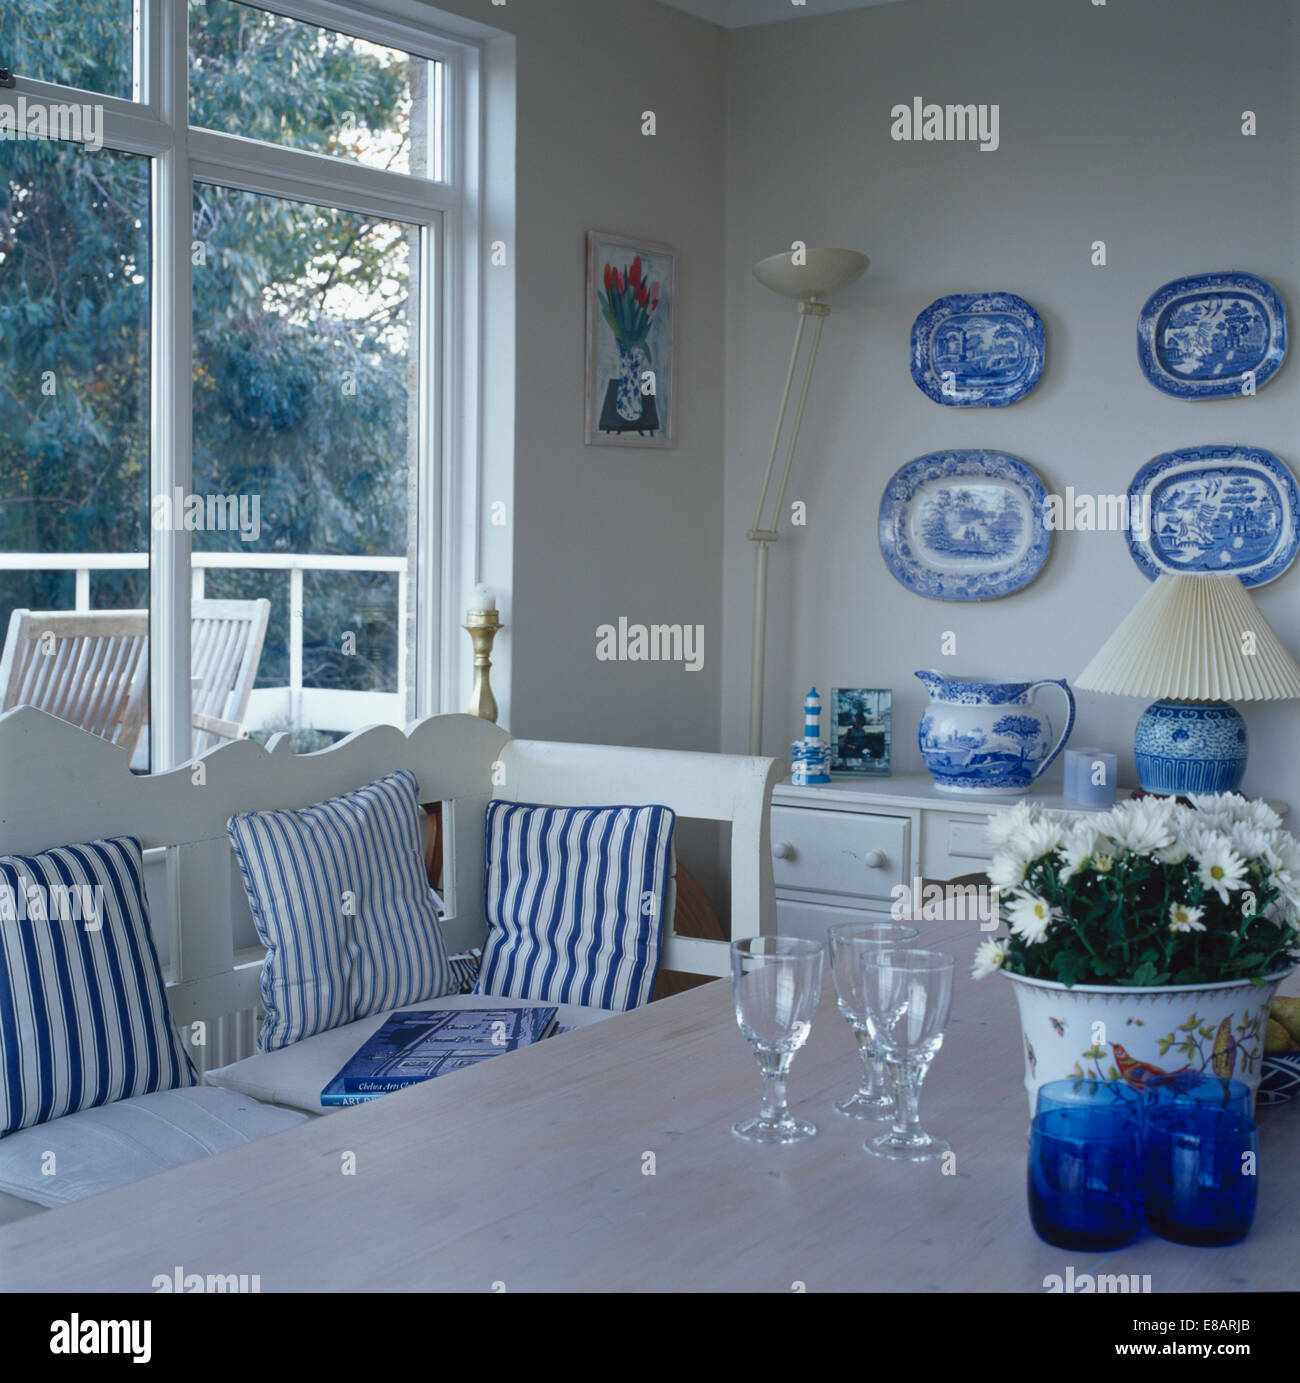 Sammlung von blaue + weiße Platten an Wand des Esszimmers mit blau gestreiften Kissen auf weißen Settle vor Fenster Stockfoto